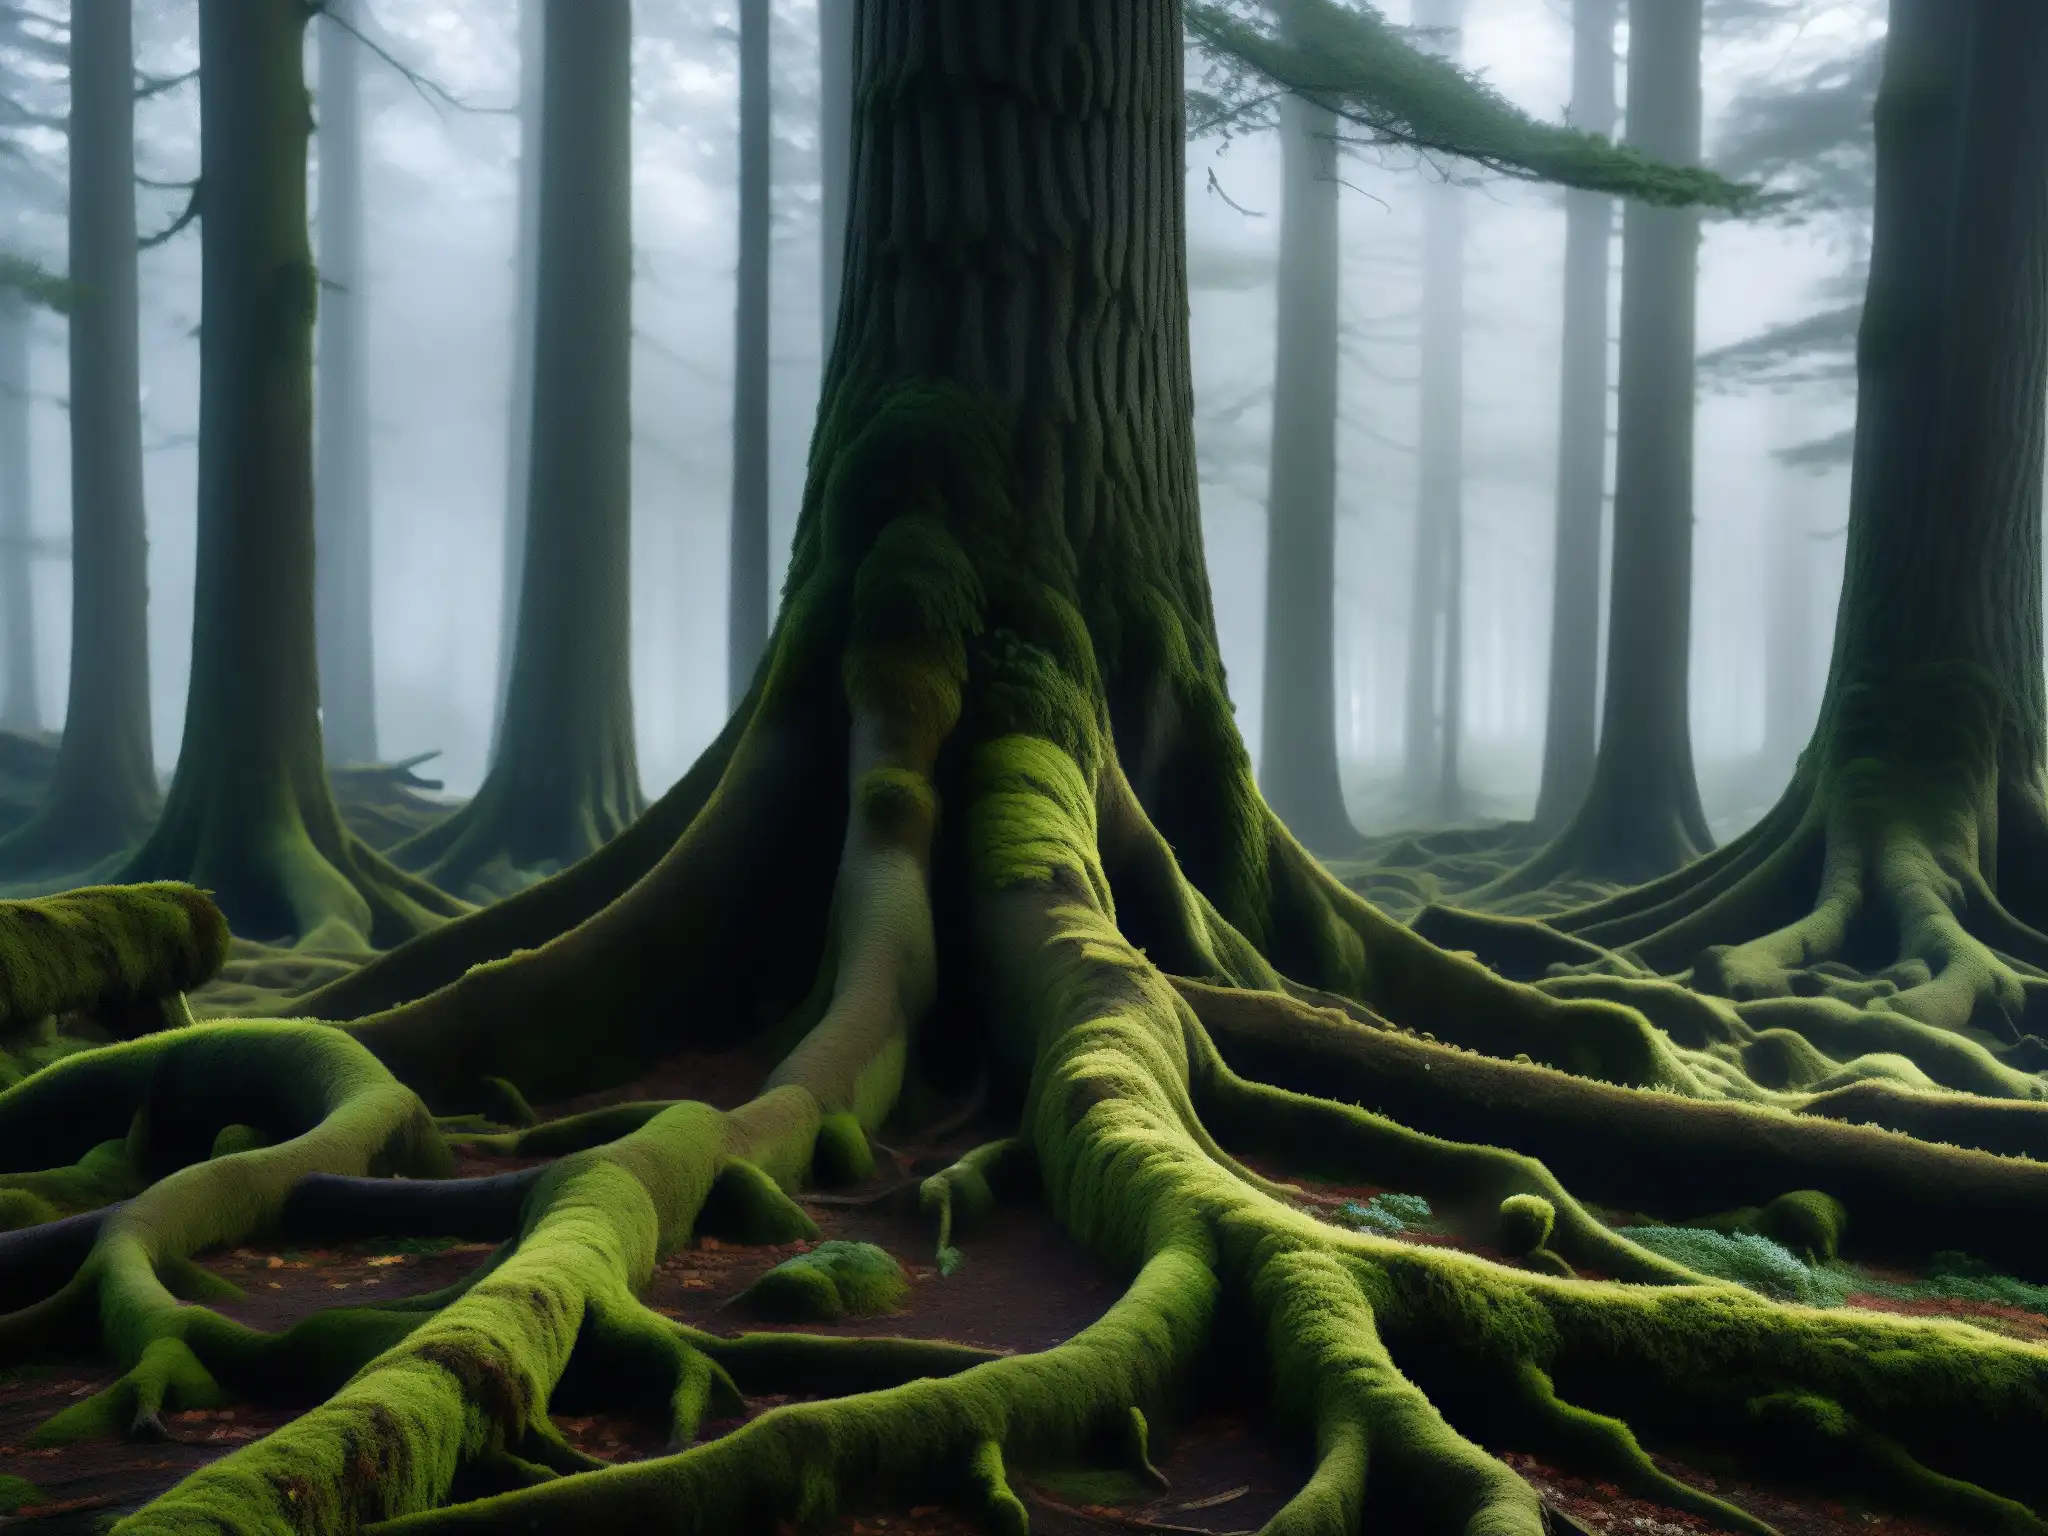 Un bosque misterioso en Japón, con árboles antiguos cubiertos de musgo y una atmósfera sobrenatural